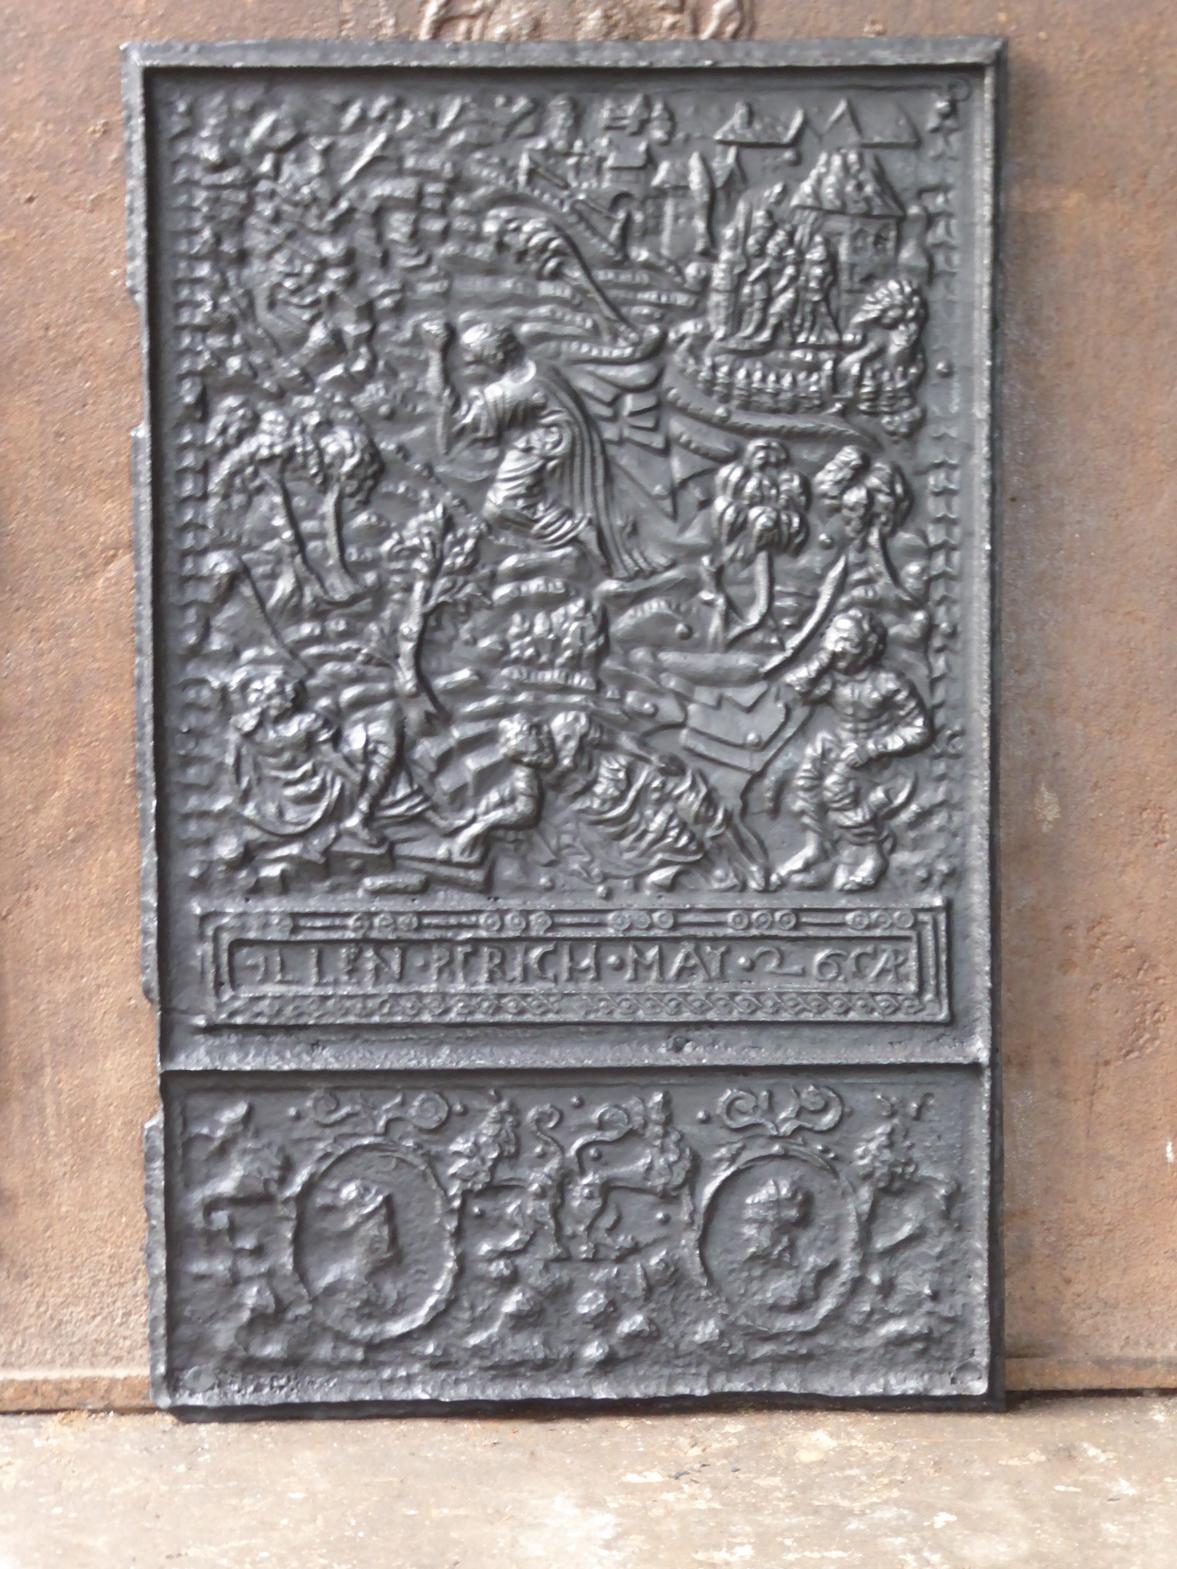 Plaque de cheminée gothique allemande du 17e siècle représentant une scène rurale. La plaque de cheminée est en fonte et a une patine noire/étain. L'état est bon, pas de fissures.



